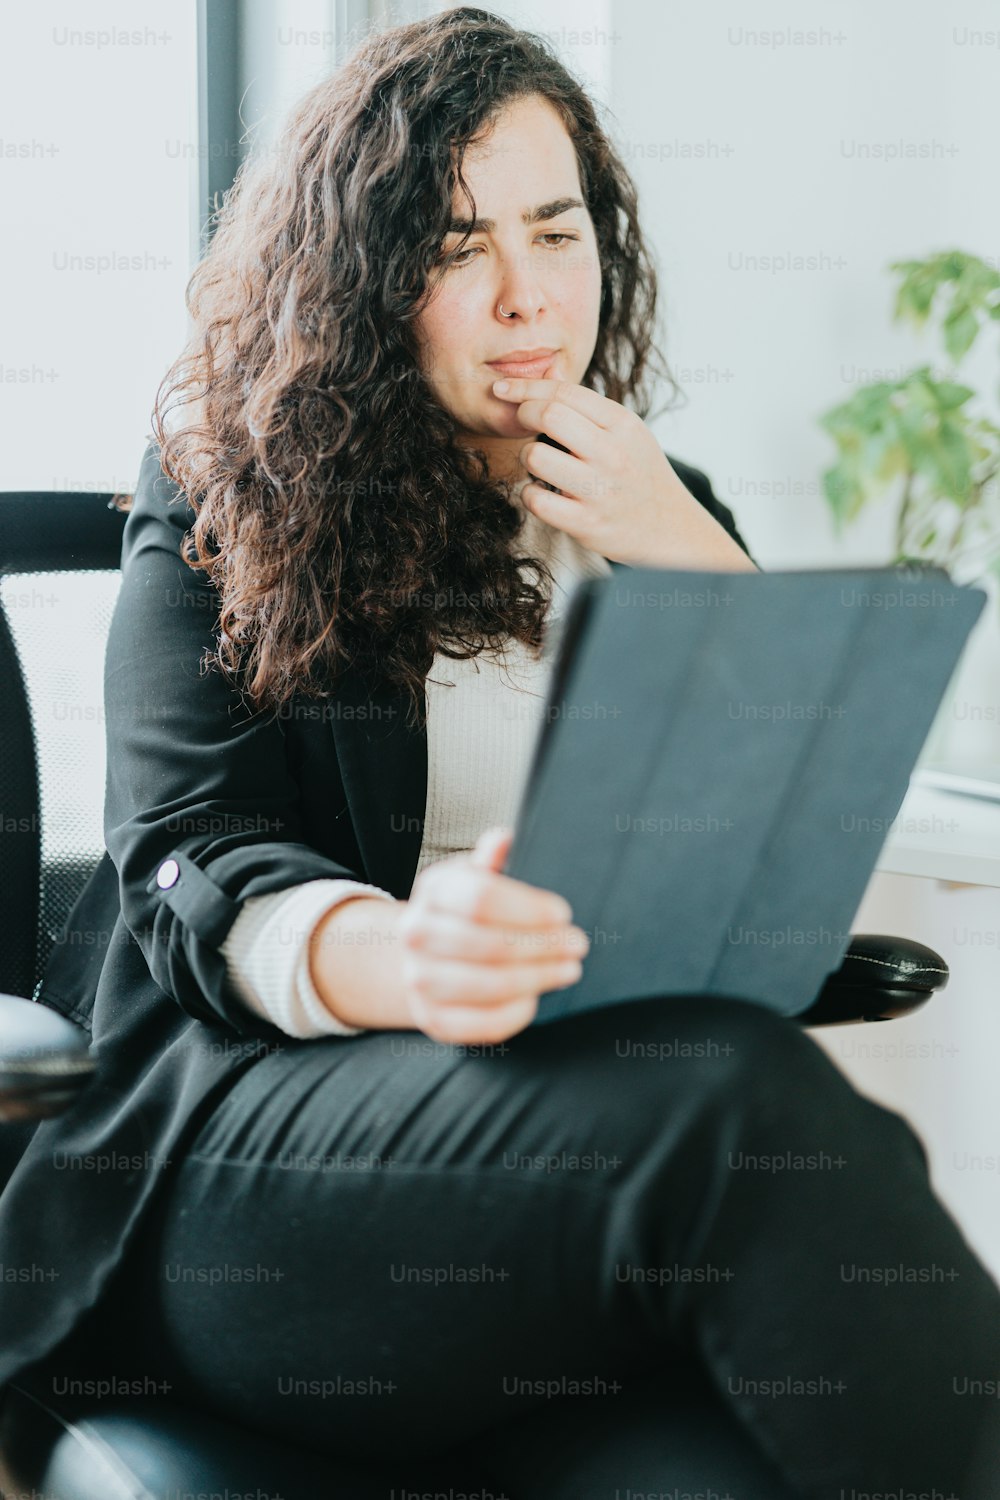 Una mujer sentada en una silla sosteniendo una tableta